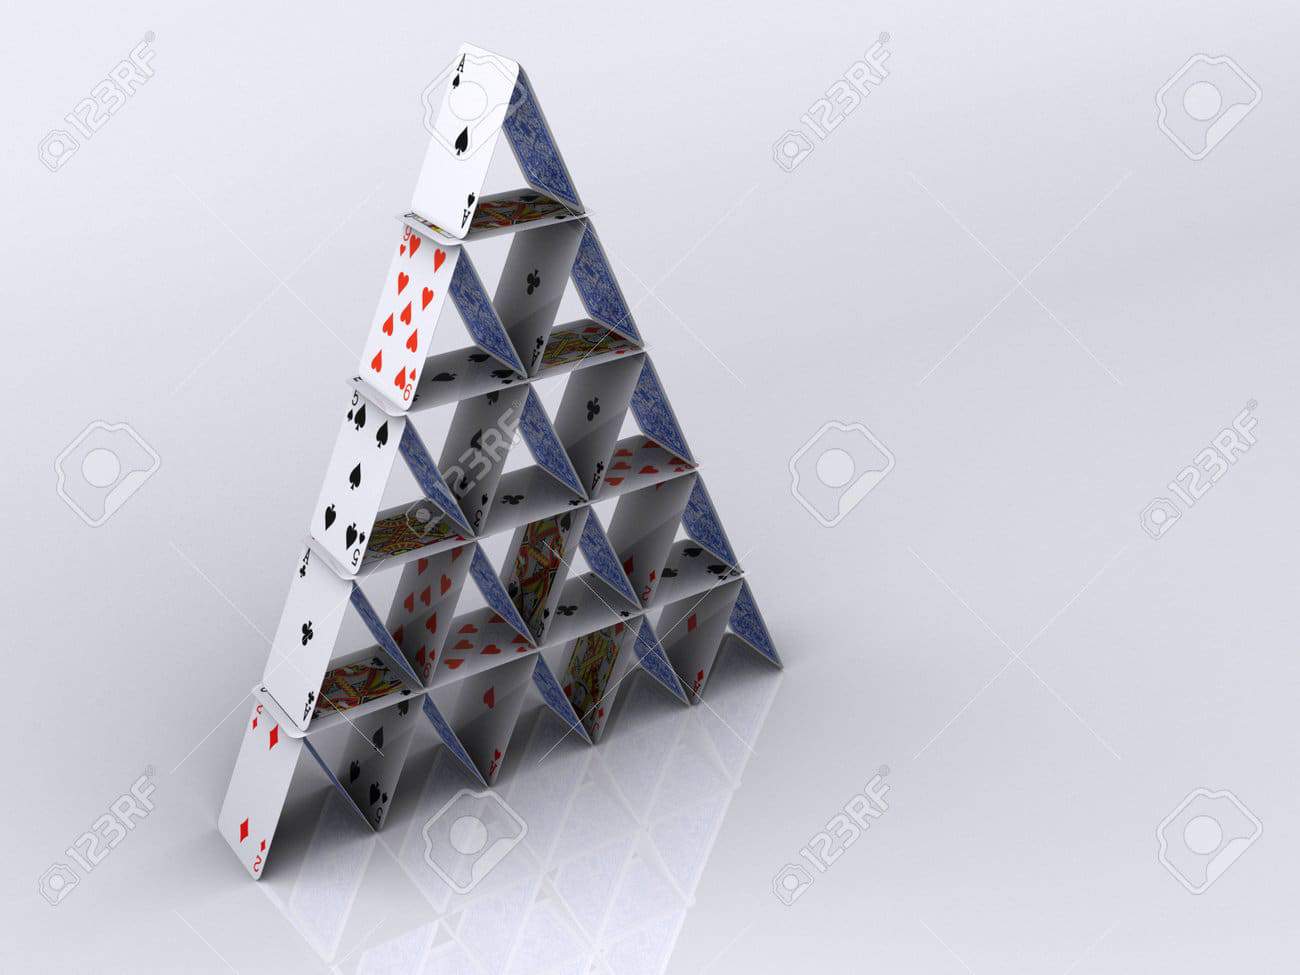 piramide de cartas